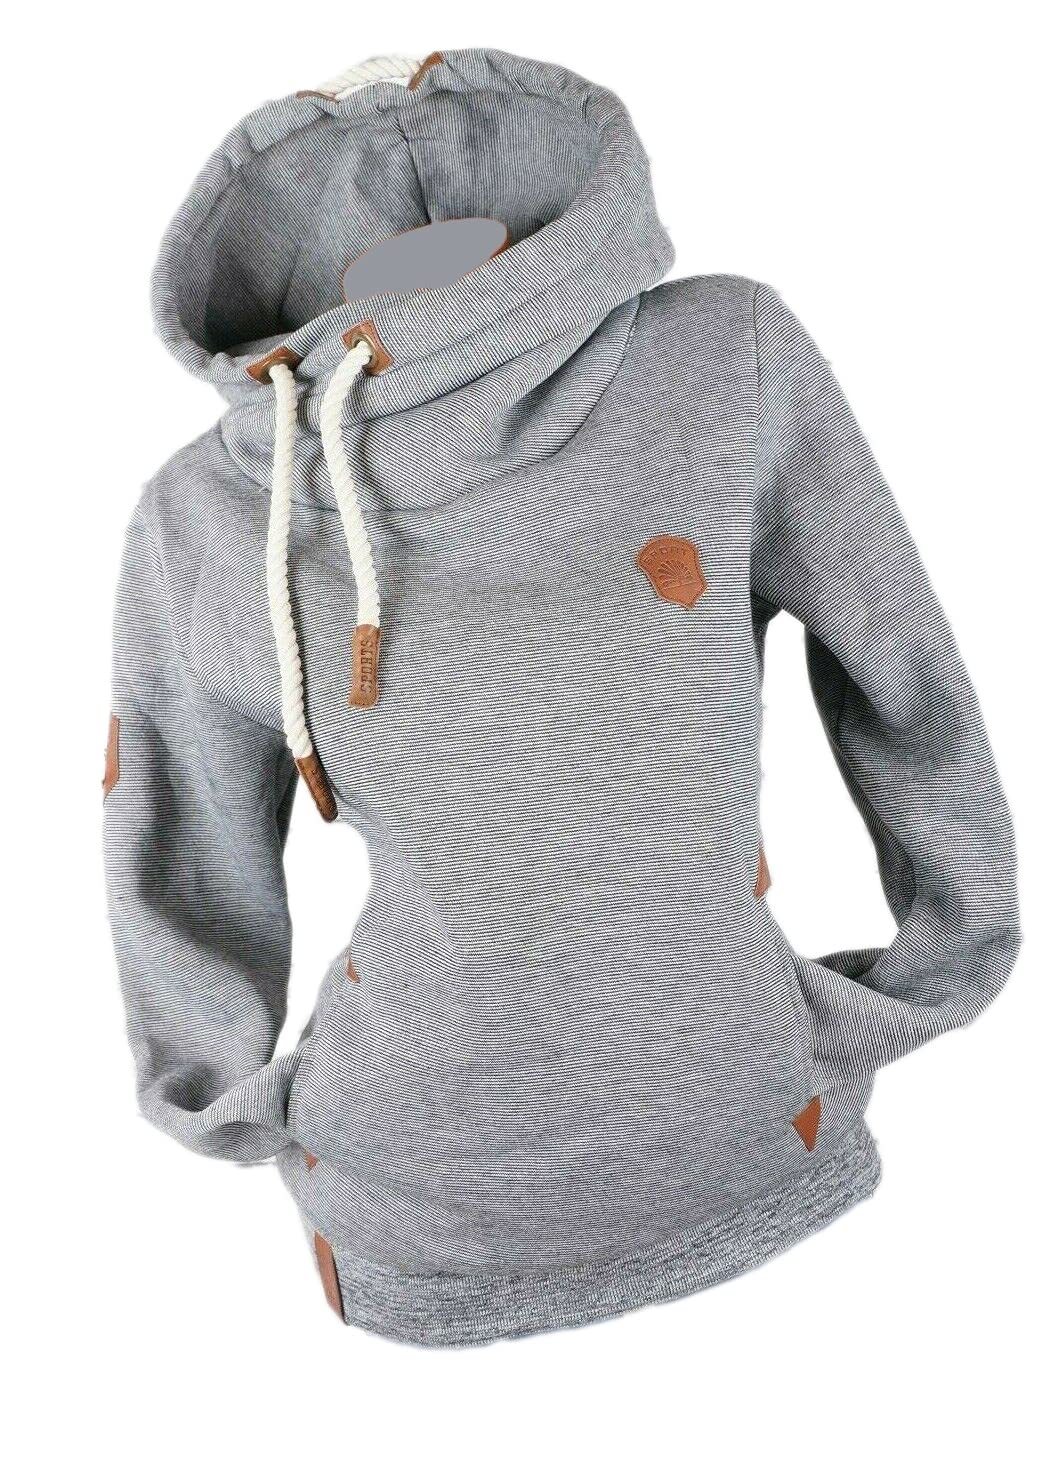 Damen Hoodie Kapuzenpullover Sweatshirt Warmer Fleece Pulli M L XL 2XL 3XL (Grau, XL, x_l)